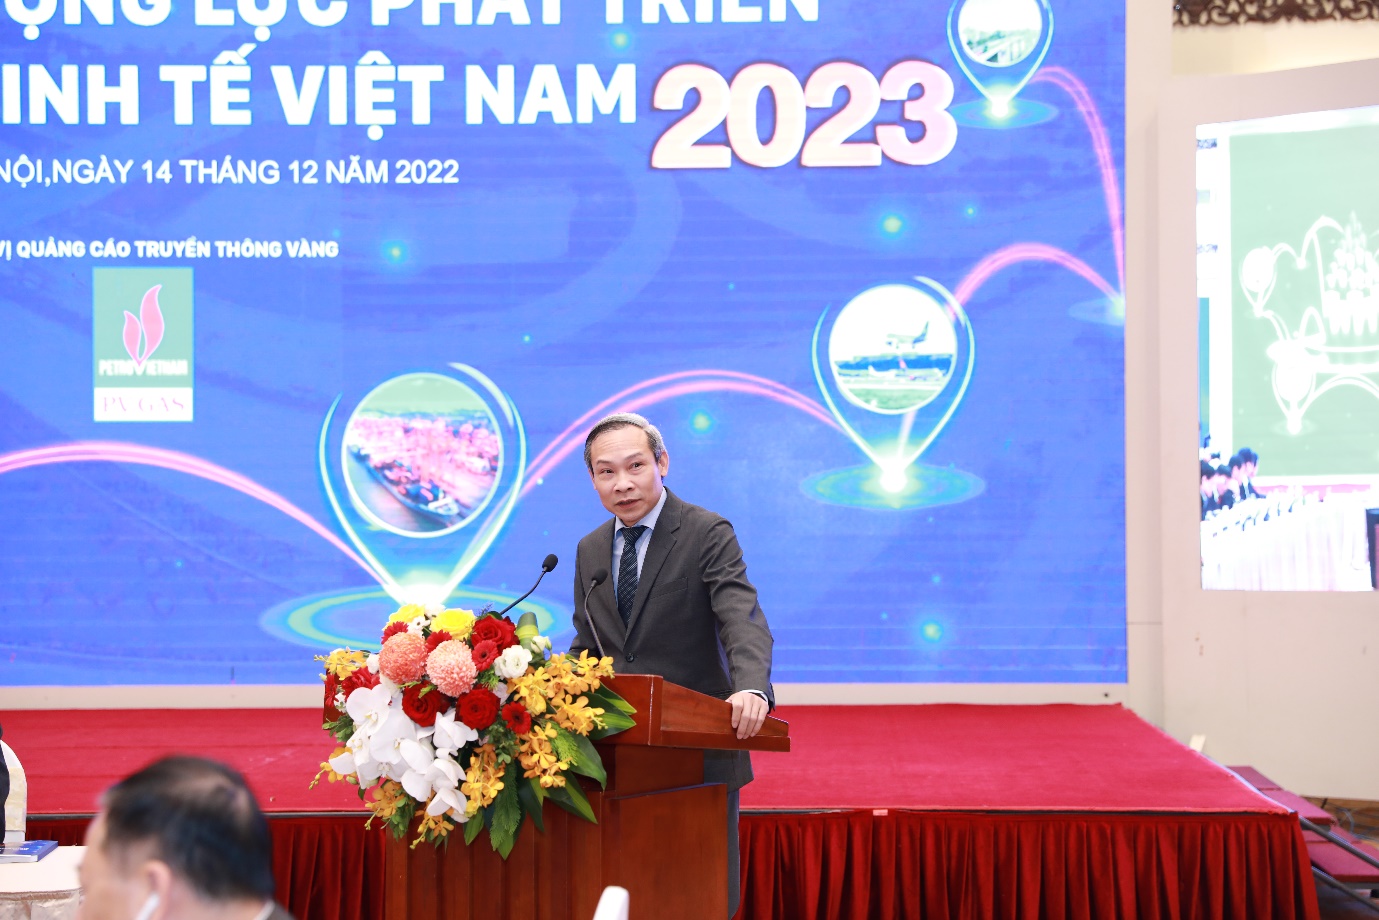 Động lực, giải pháp nào phát triển kinh tế Việt Nam ổn định, bền vững - 4